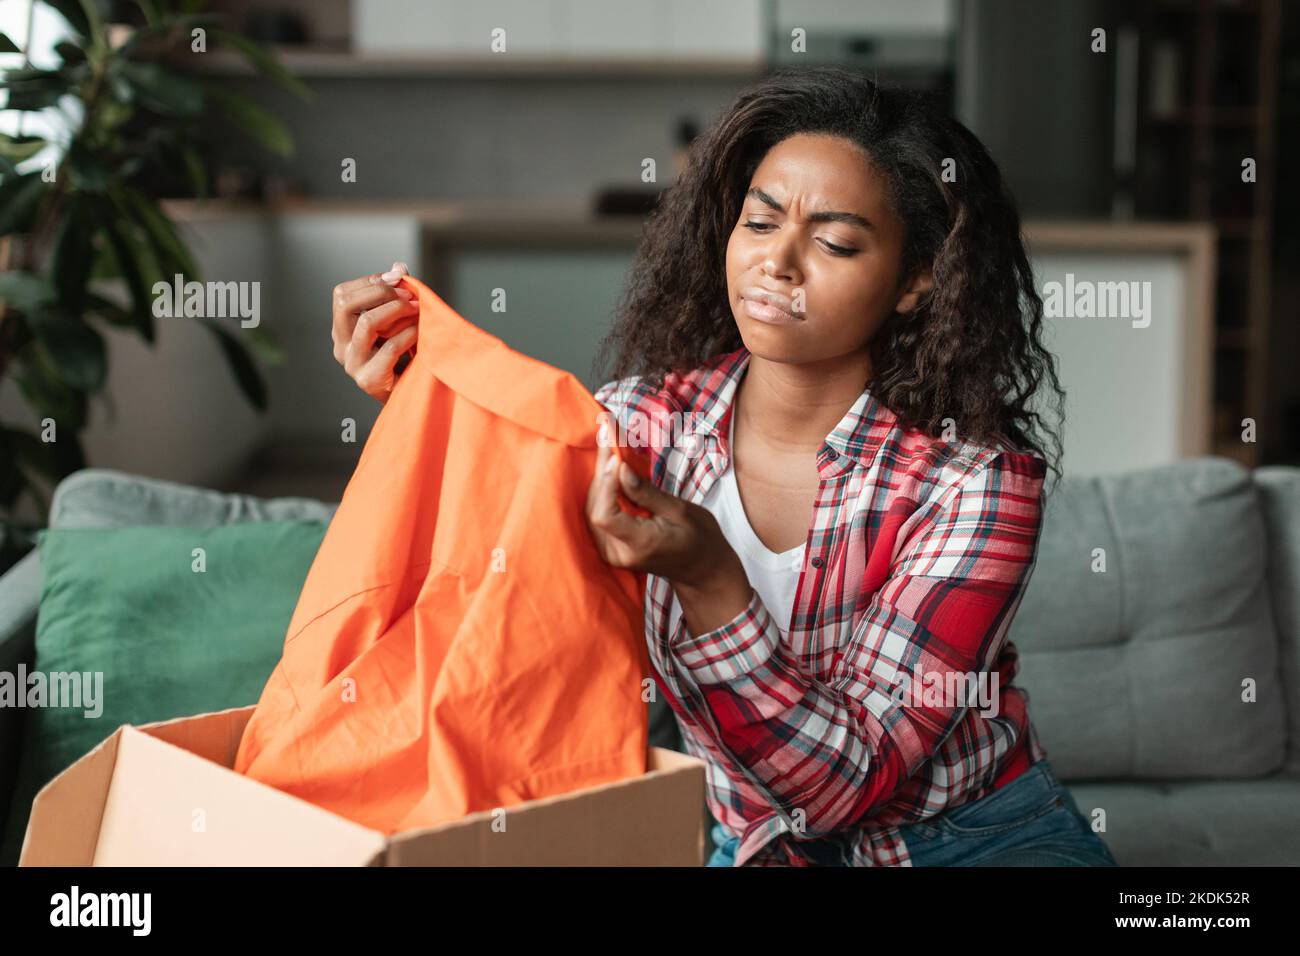 Traurige unzufriedene schwarze junge Frau in lässigen Anblicken auf Kleidung, packt Paket im Wohnzimmer Interieur aus Stockfoto